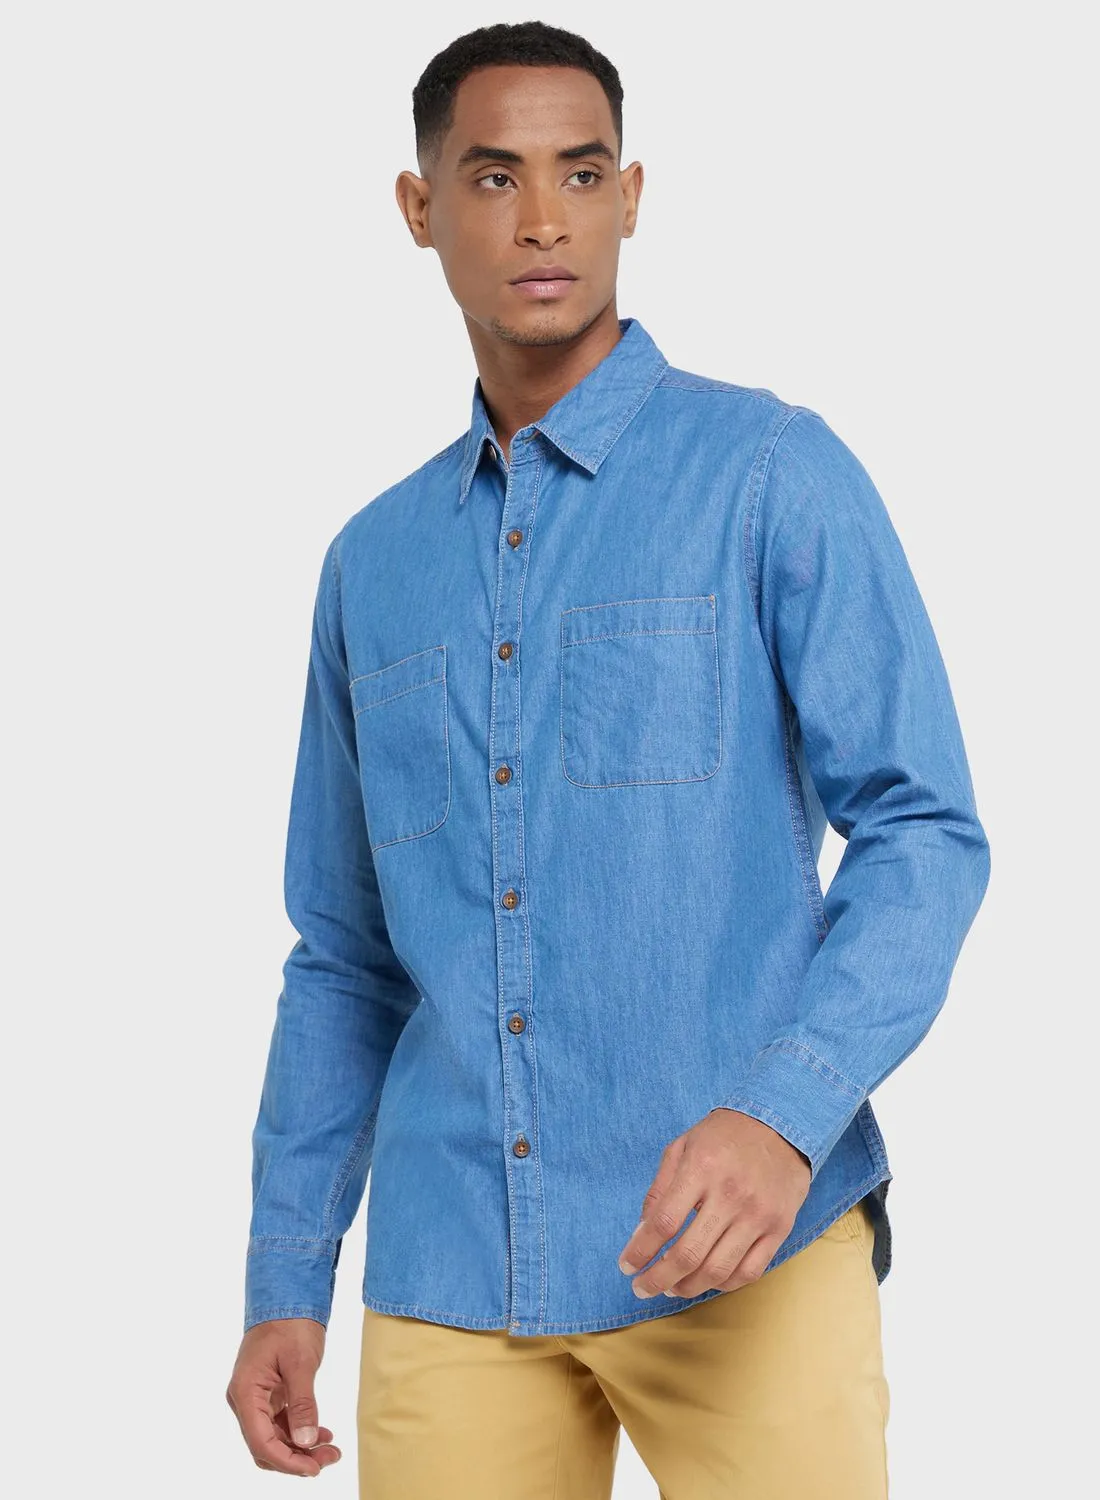 قميص توماس سكوت توماس سكوت الرجالي الأزرق الذكي ذو المقاس النحيف غير الشفاف